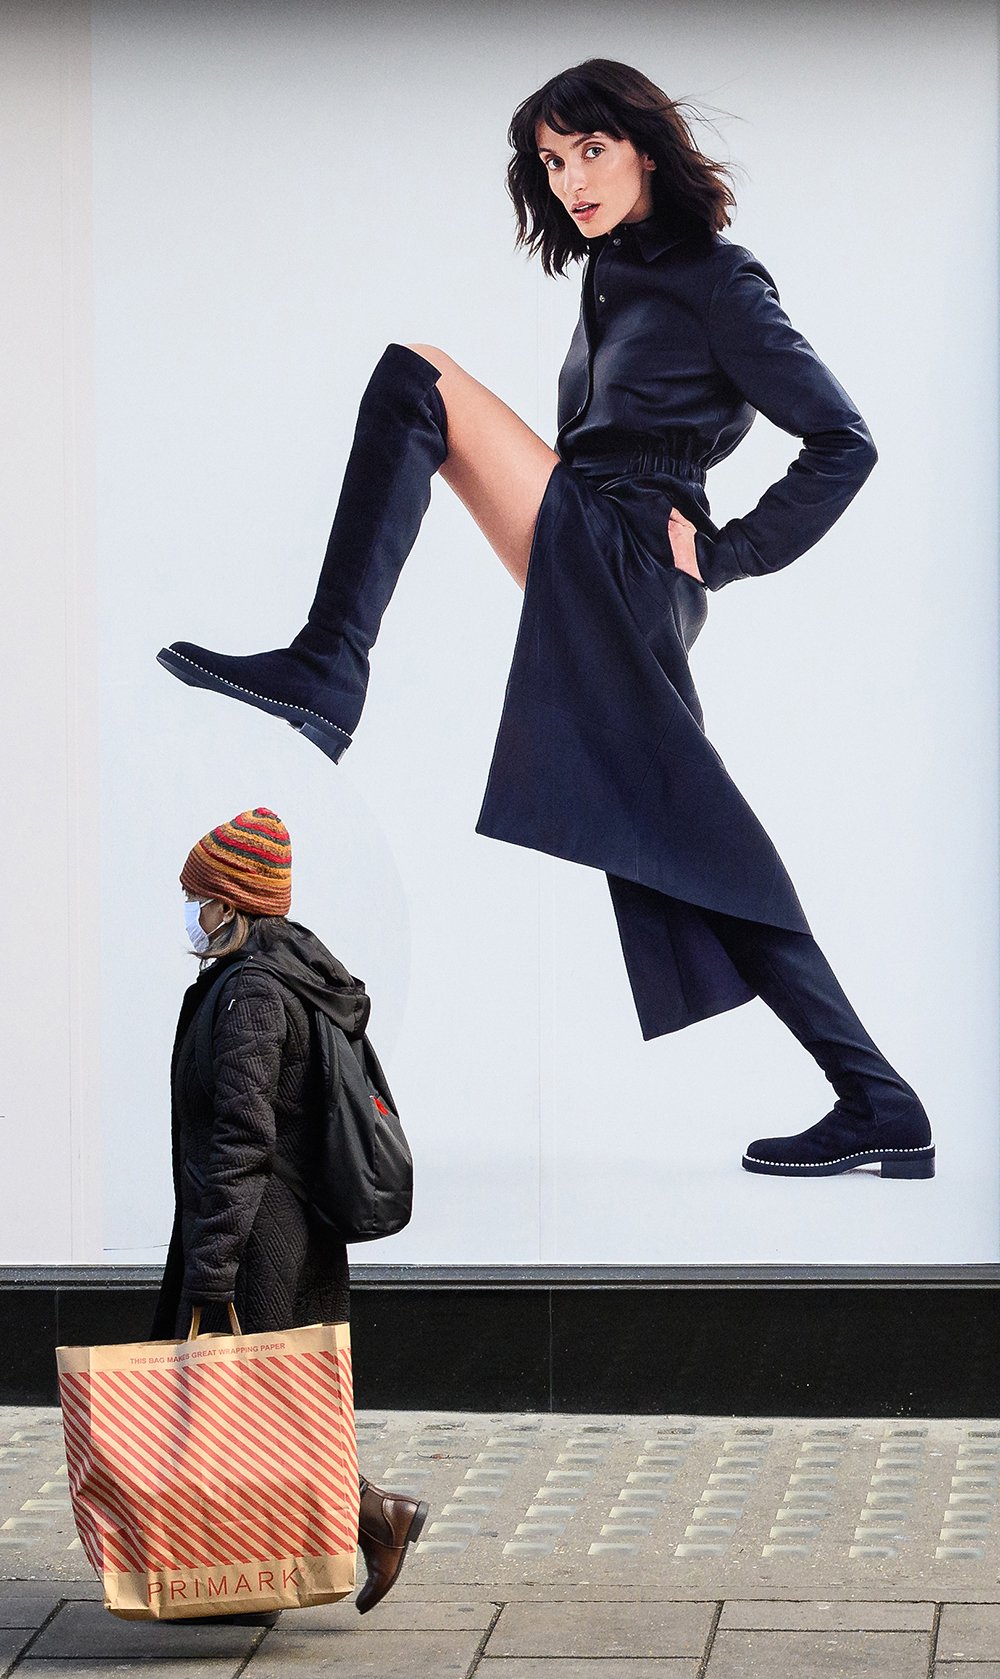 Leon Neal, Kasım 2022'deki Black Friday (Kara Cuma) indirimleri sırasında Londra'nın merkezindeki Oxford Caddesi'nde alışverişe çıkan bir kişiyi, reklam panosunun önünde böyle çekti.